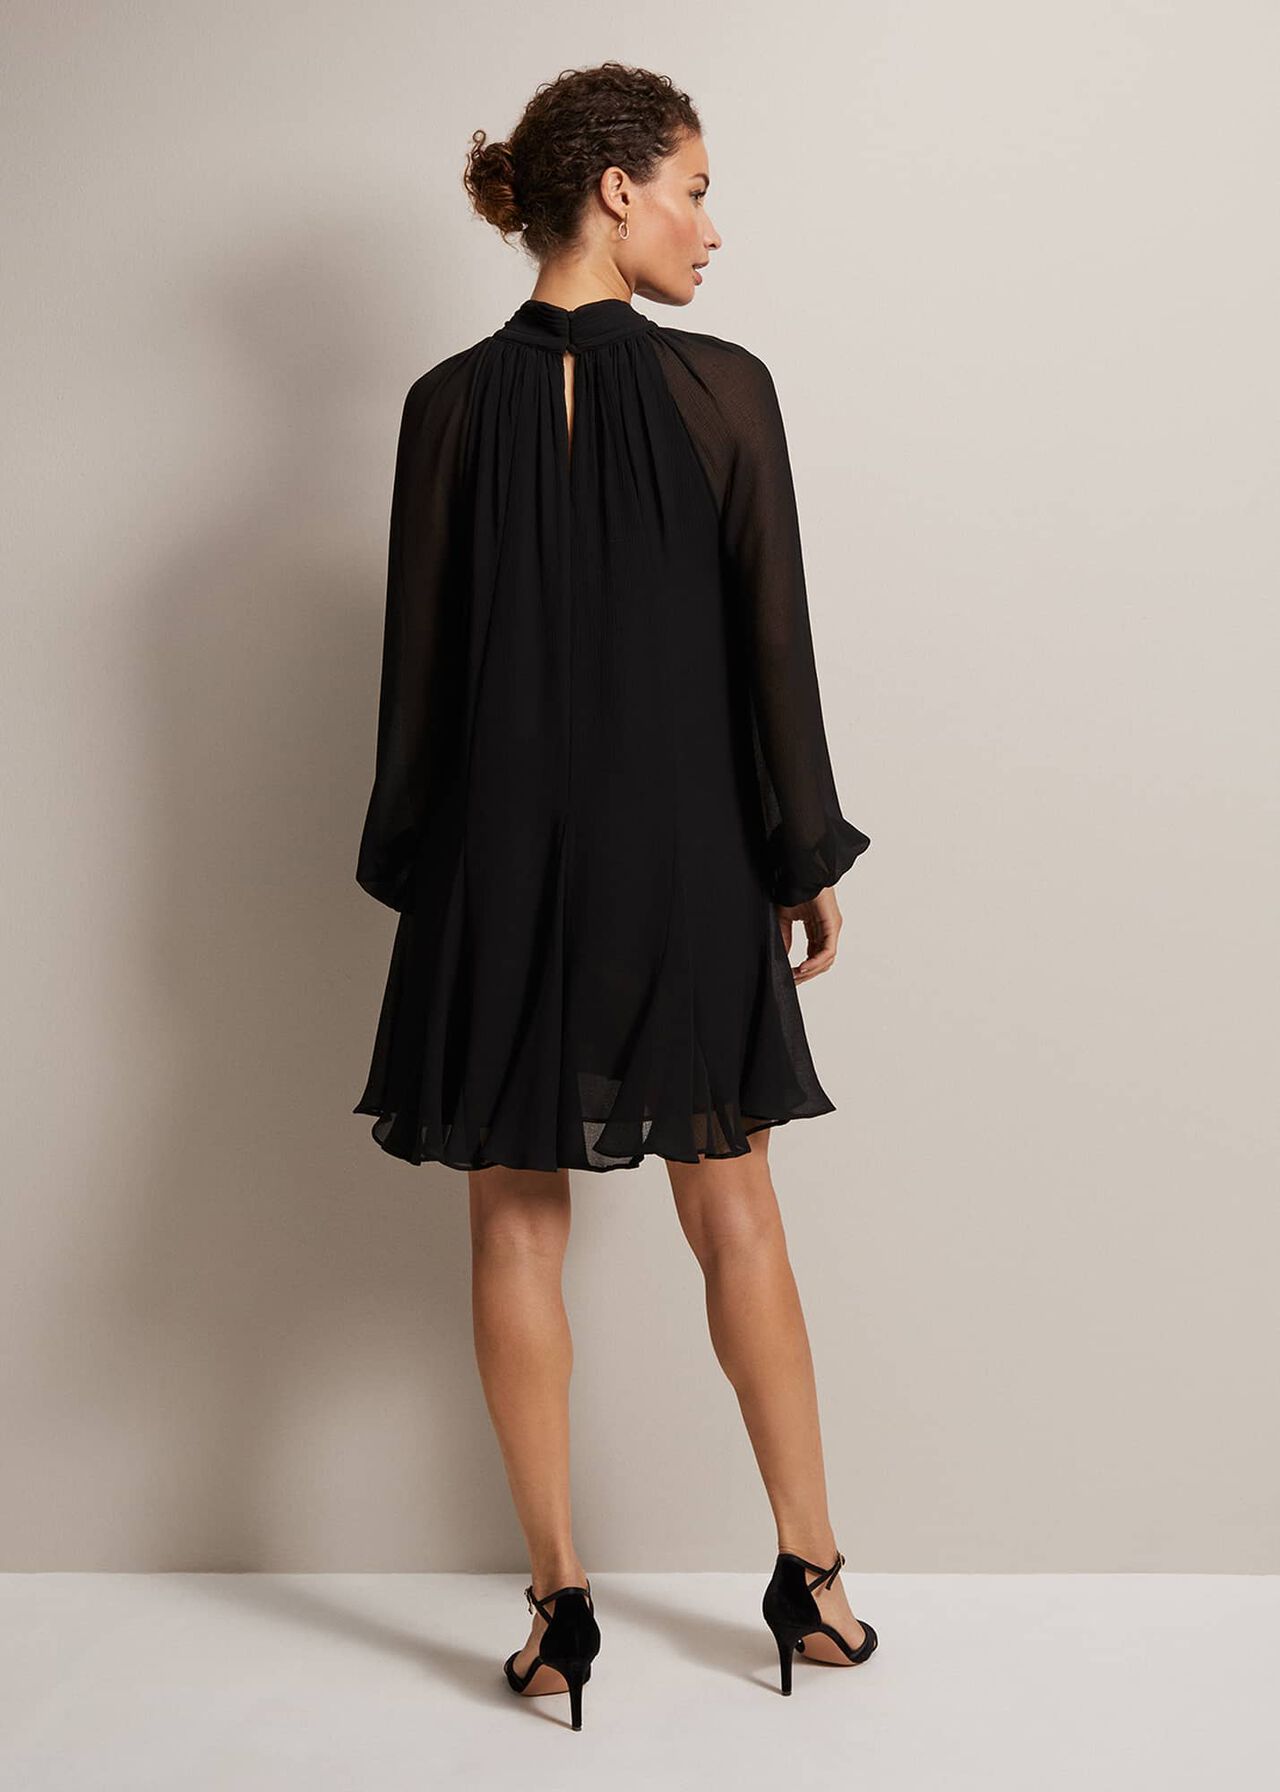 Romanna Black Swing Mini Dress